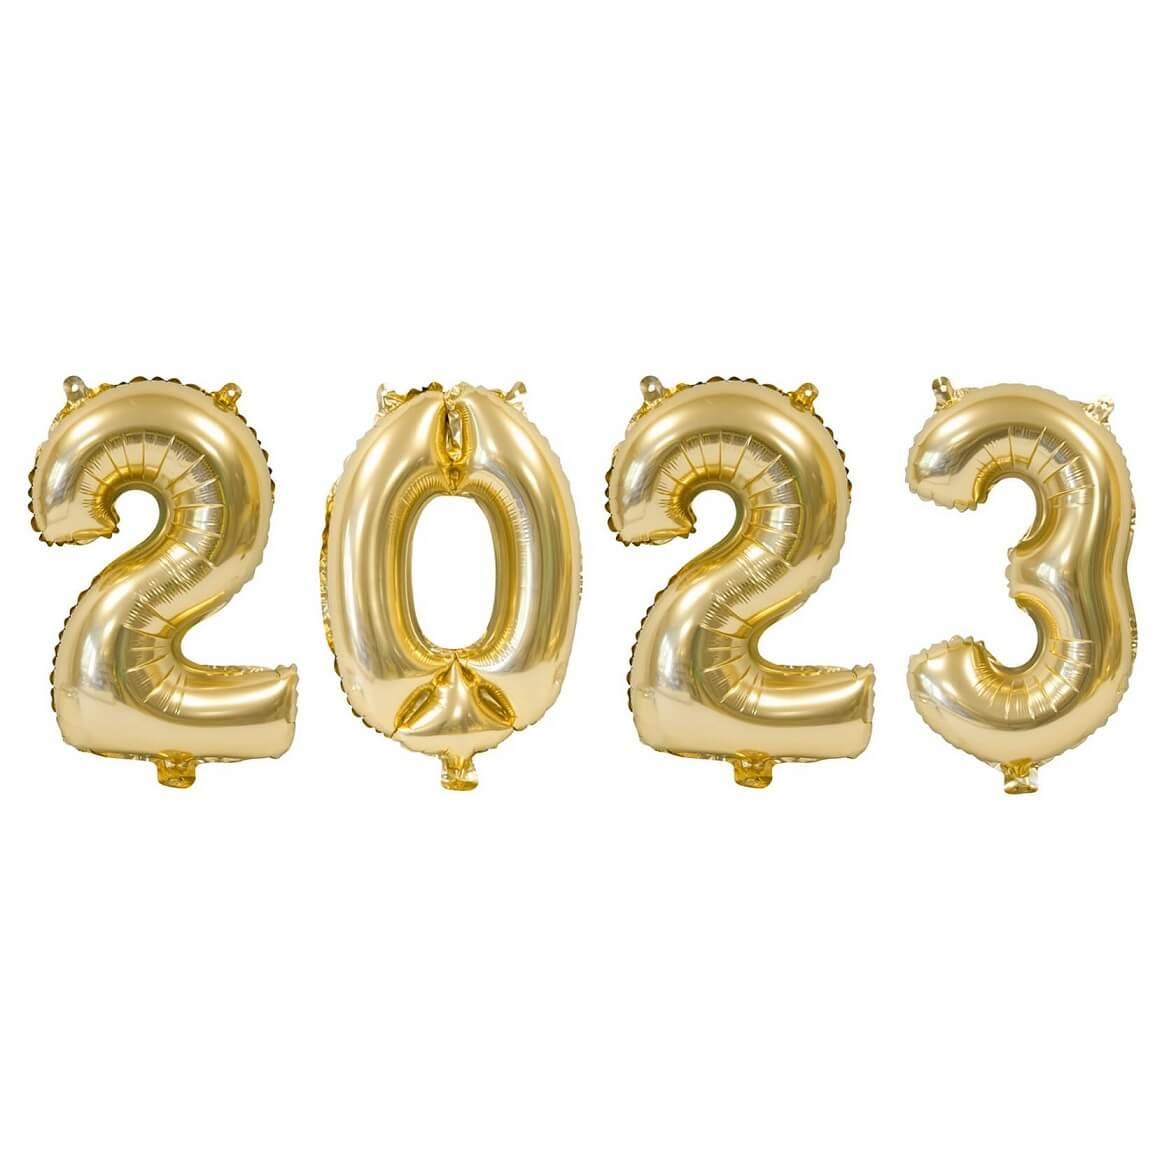 Decoration Nouvel An 2022 Deco Fete Nouvelle AnnéE Allon En Aluminium  RéVeillon Du Nouvel Lettres D'Or Ballons En Aluminium 20[228]